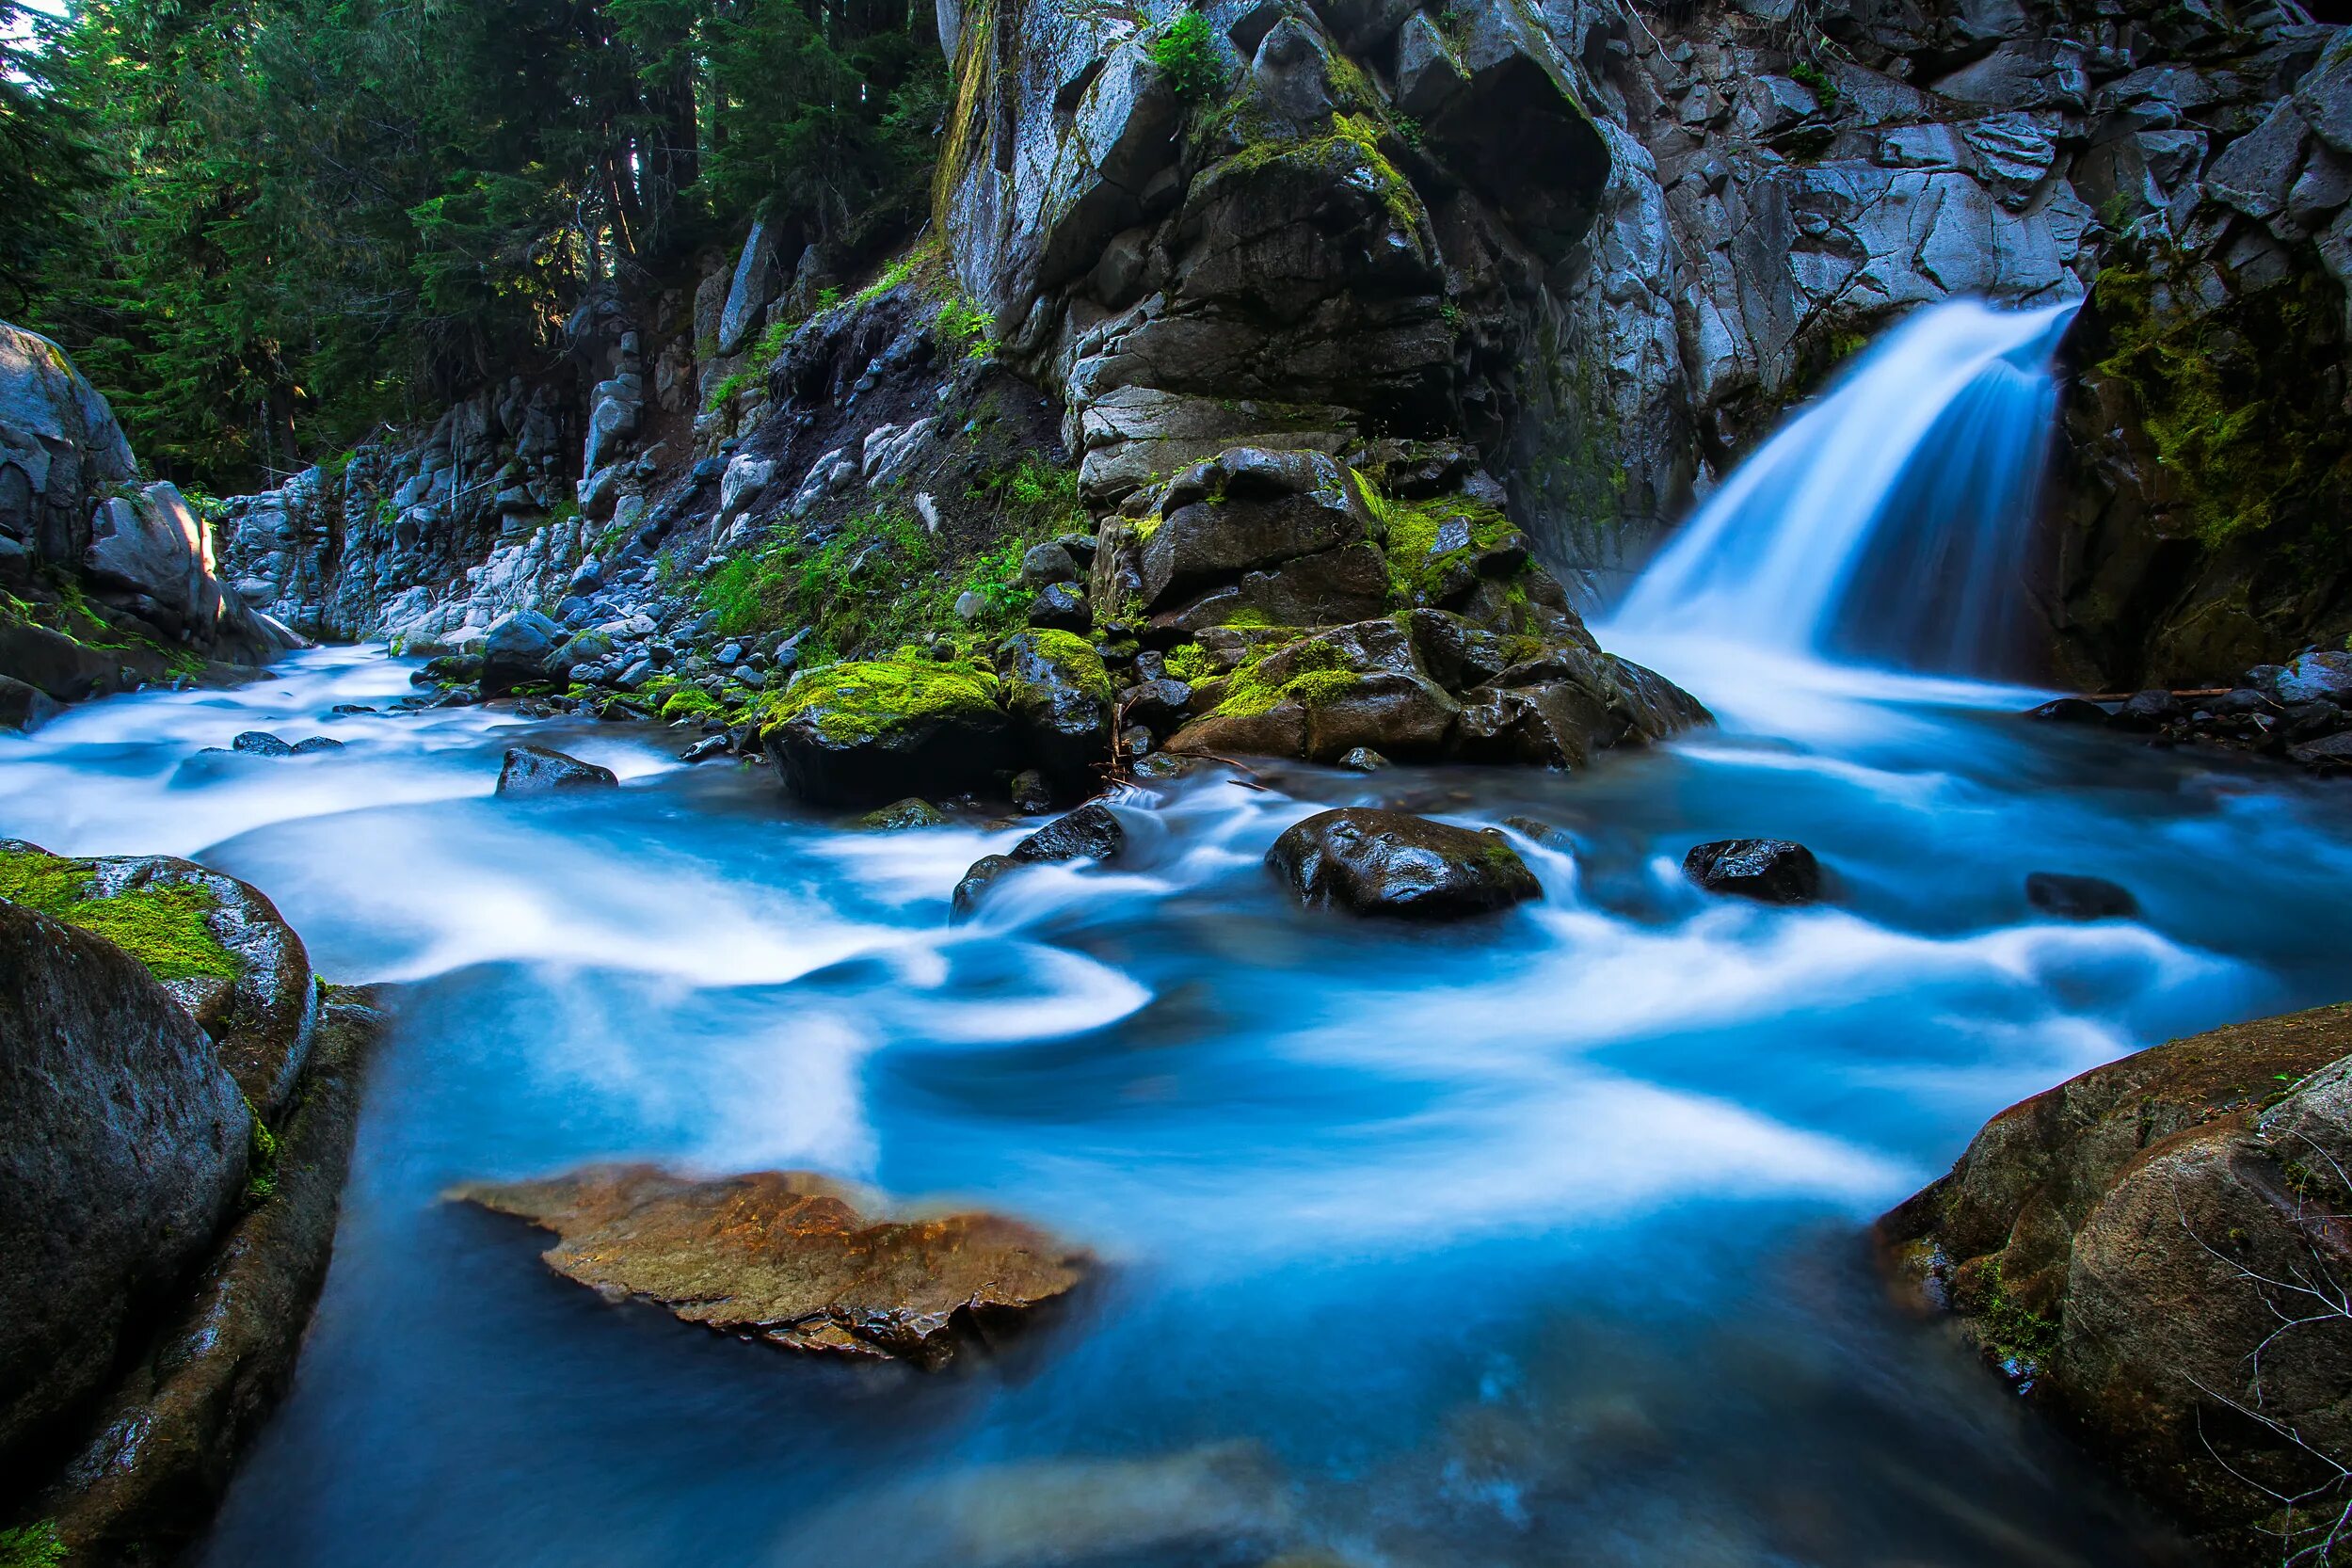 Бесплатные картинки на заставку телефона. Природа водопад. Пейзаж водопад. Река с водопадом. Горный ручей.